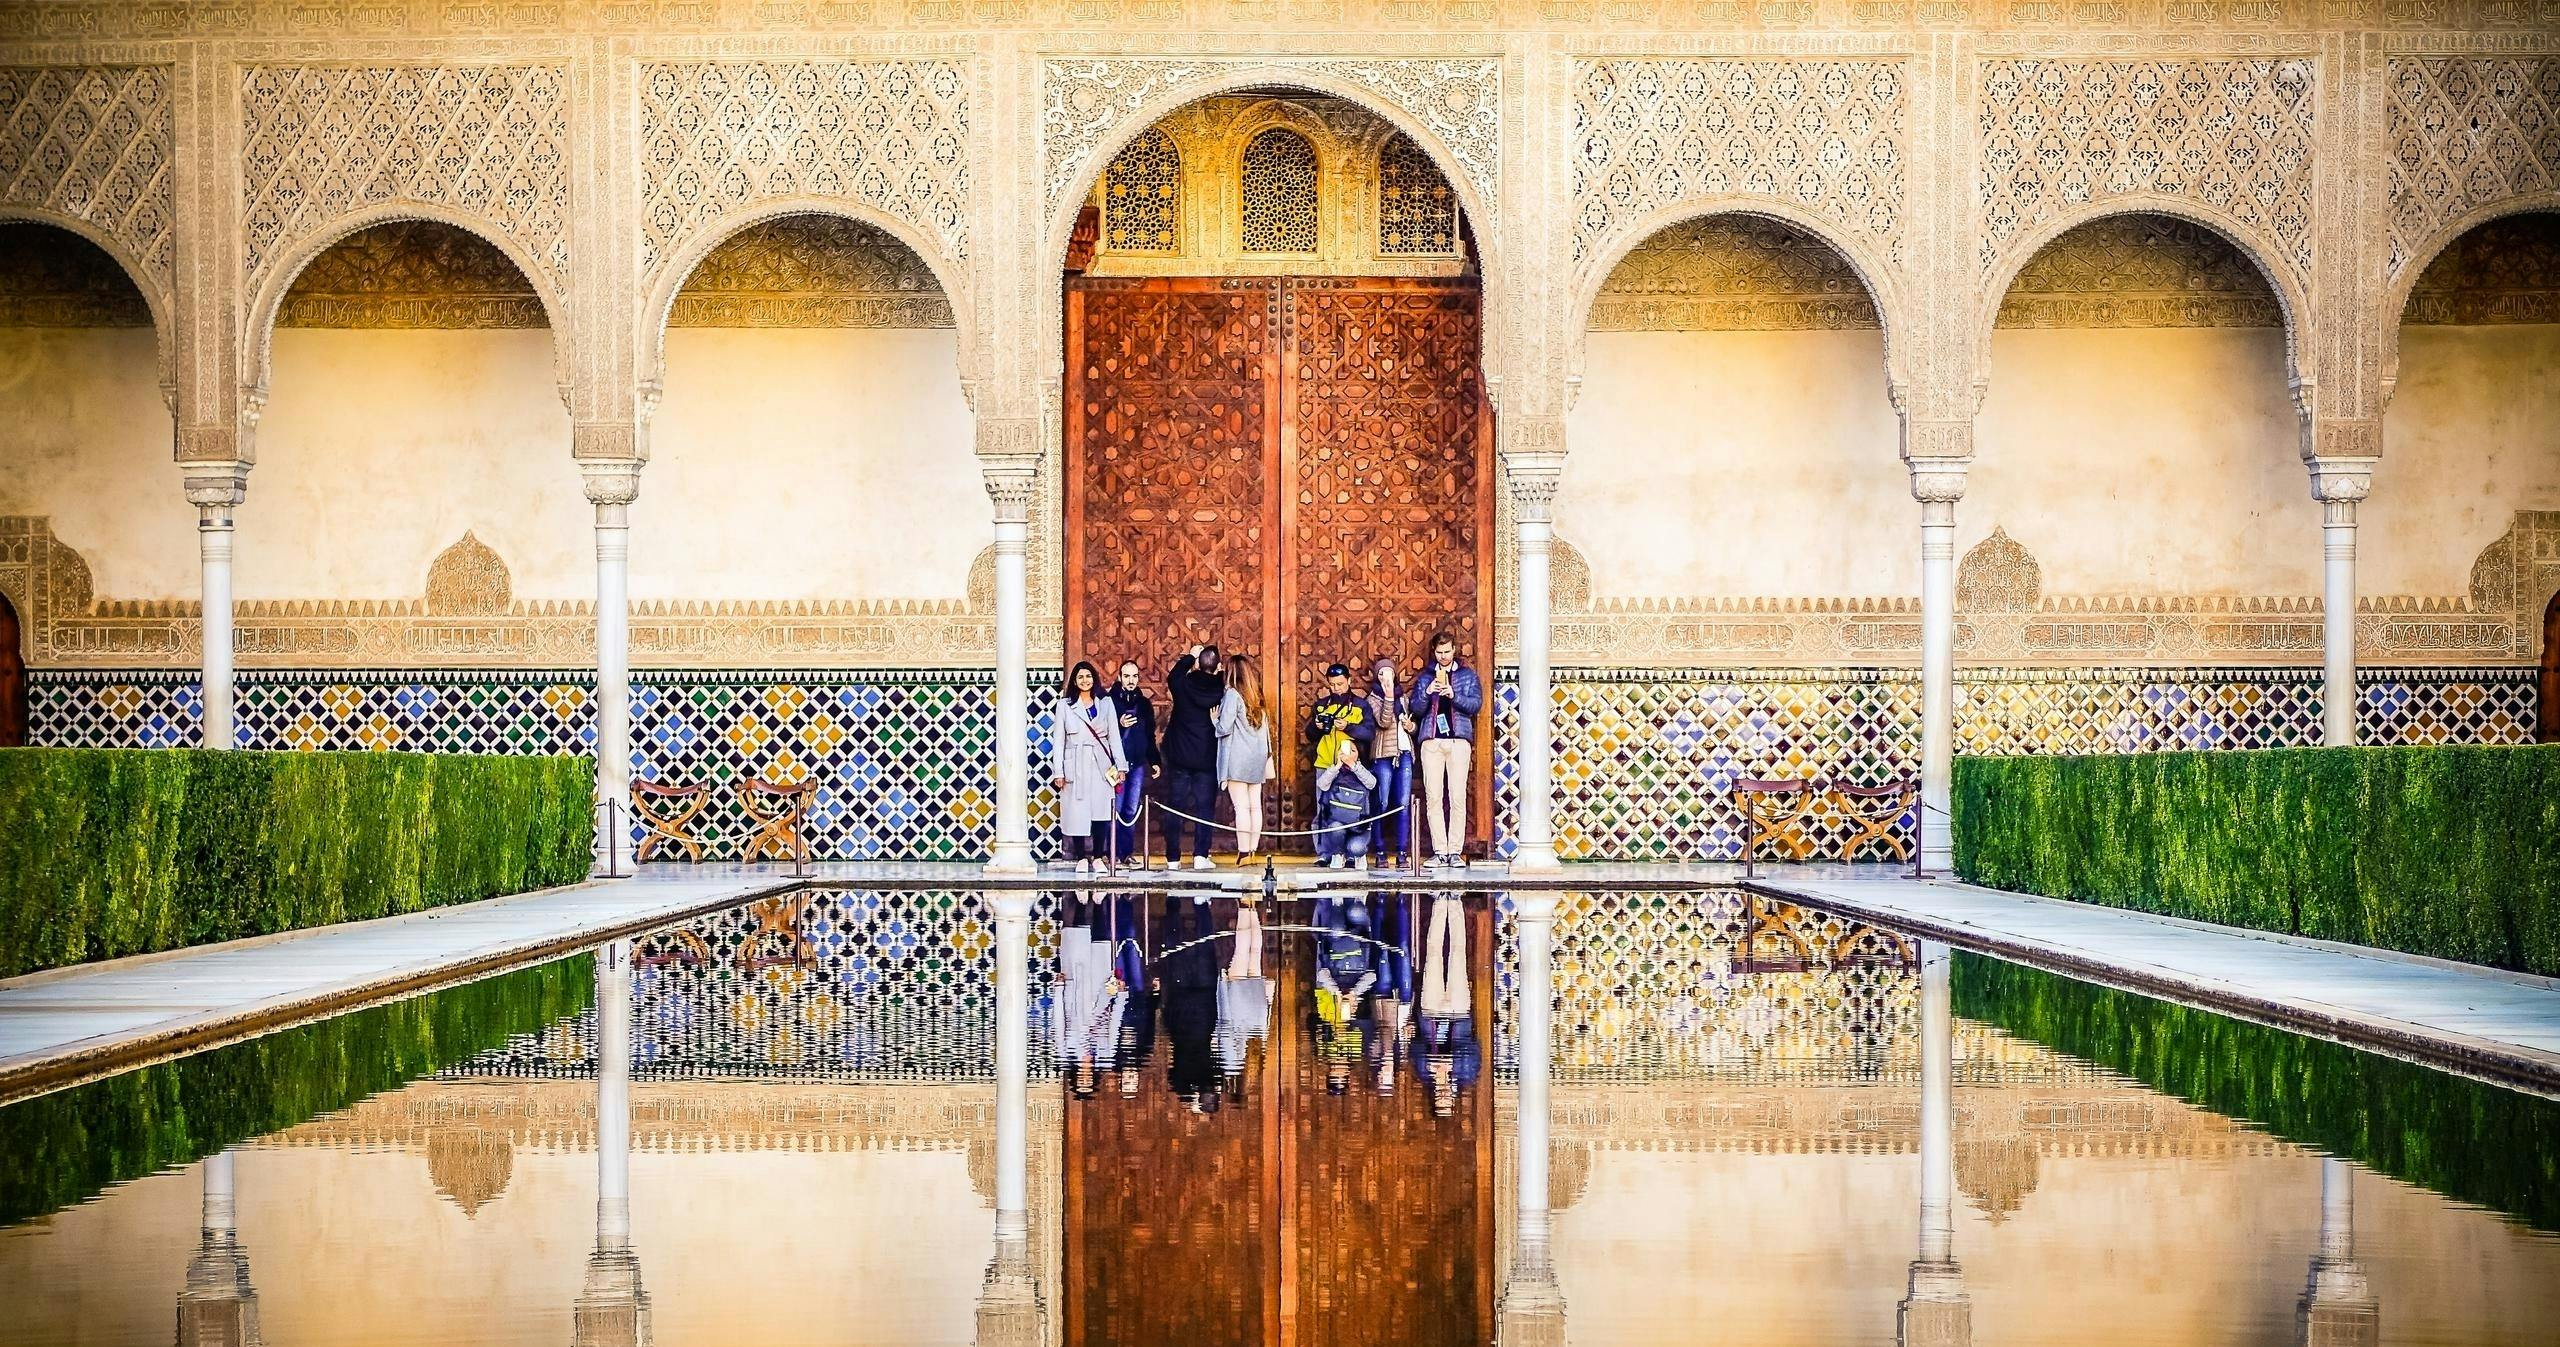 Biglietti d'ingresso e visita guidata dell'Alhambra di Granada